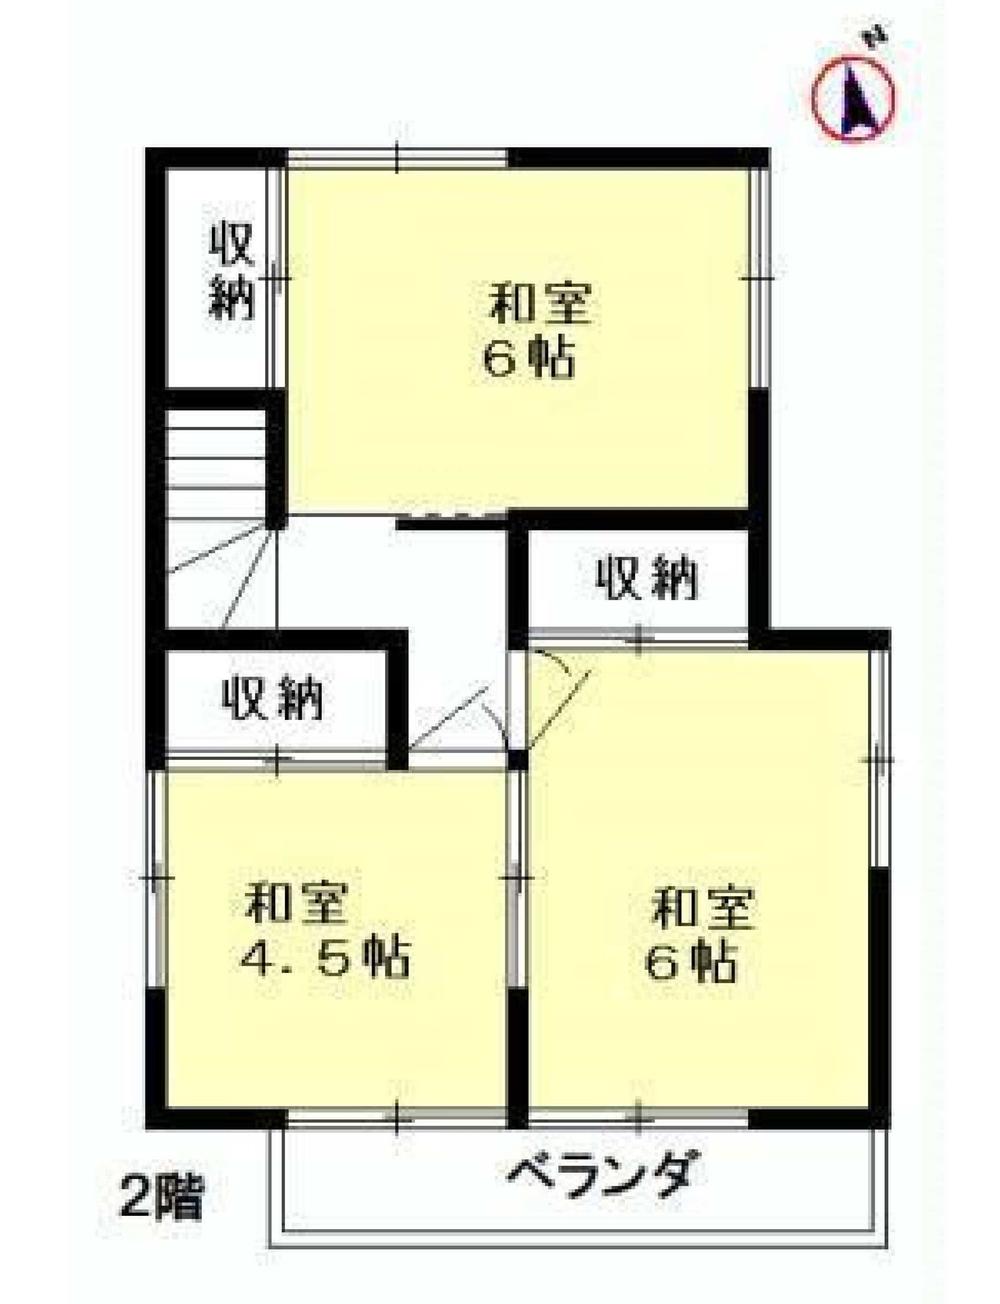 Floor plan. 25,500,000 yen, 4DK, Land area 94.11 sq m , Building area 71.05 sq m